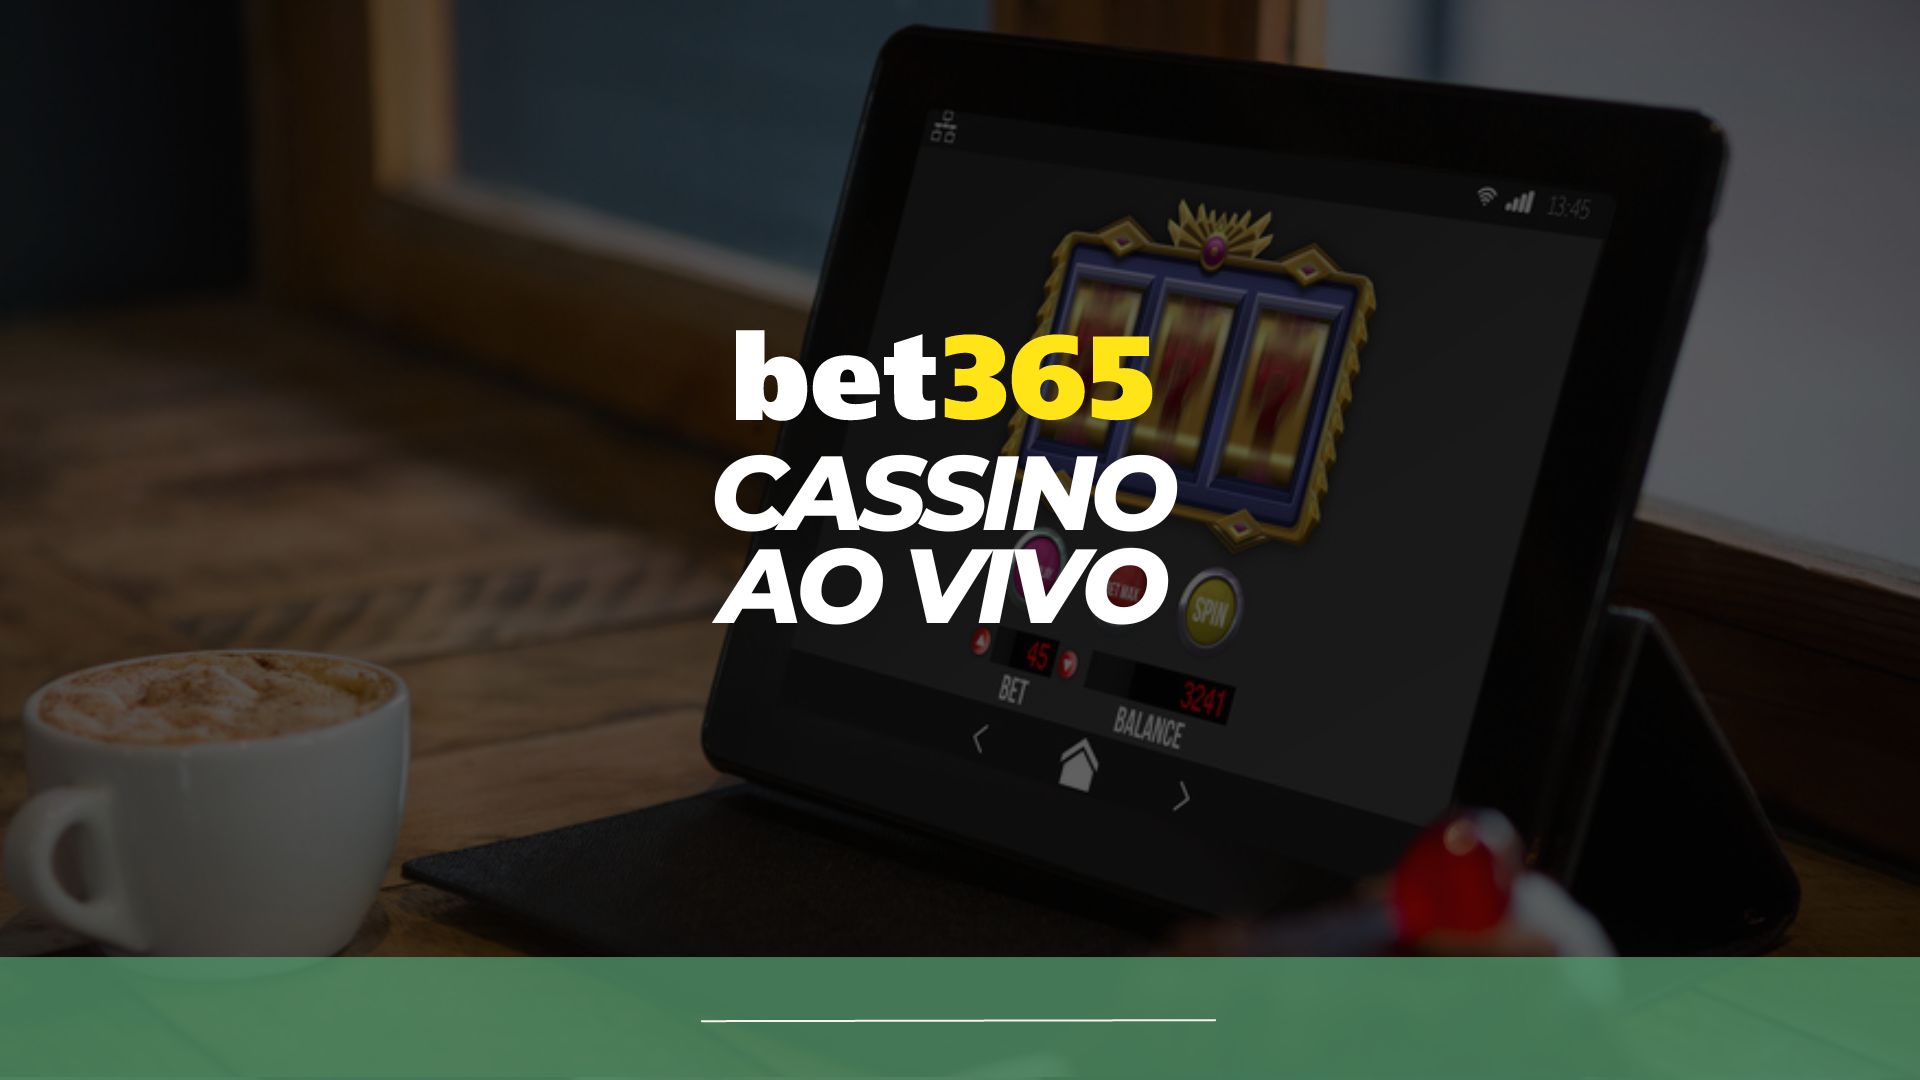 bet365 Casino Ao Vivo: cadastre e ganhe fichas douradas